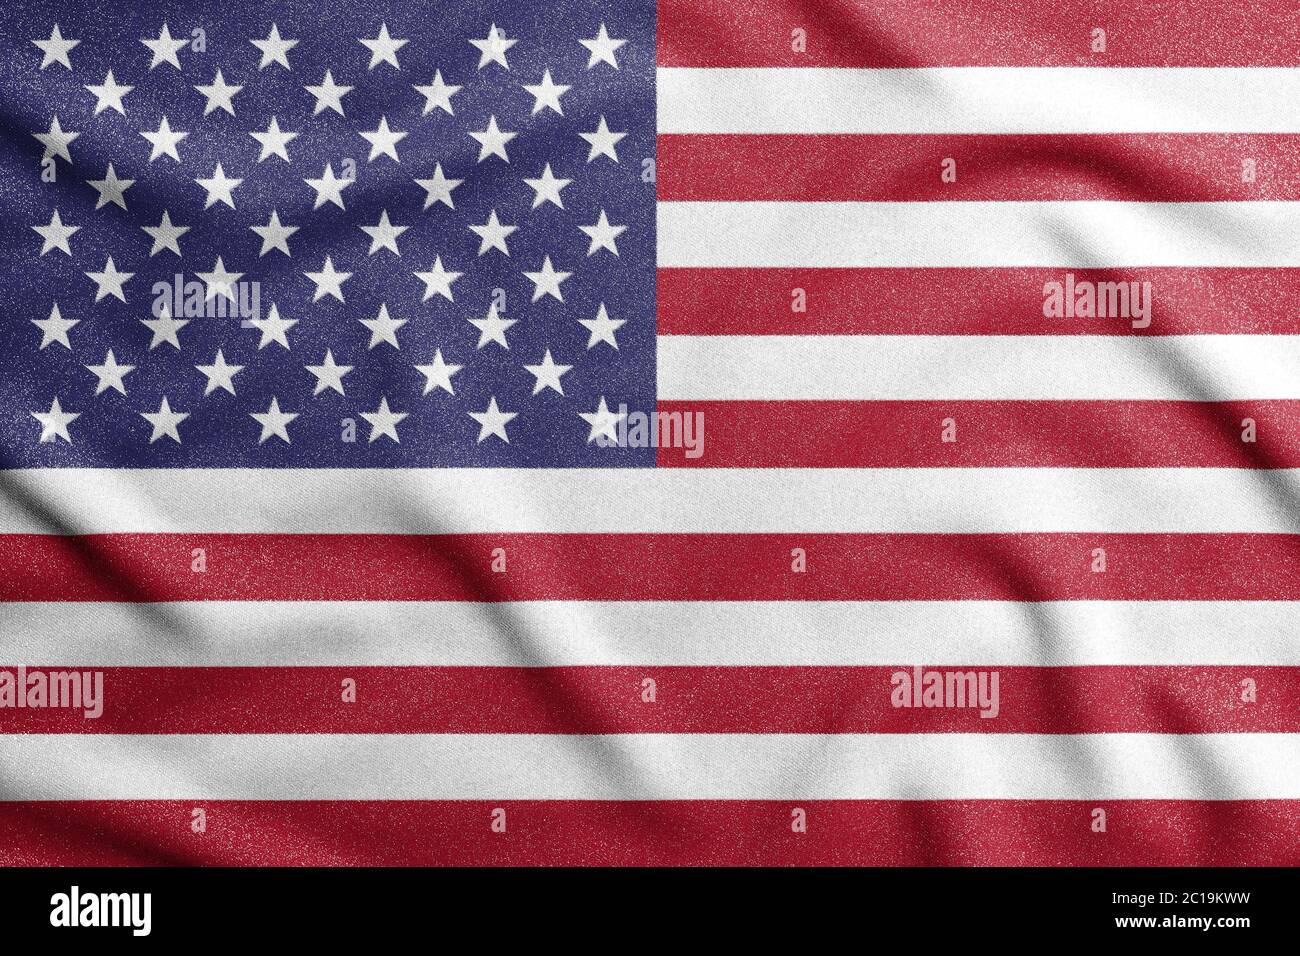 Bandiera nazionale degli stati uniti d'america. Il simbolo principale di un paese indipendente. Un attributo della grande dimensione di uno Stato democratico. Foto Stock